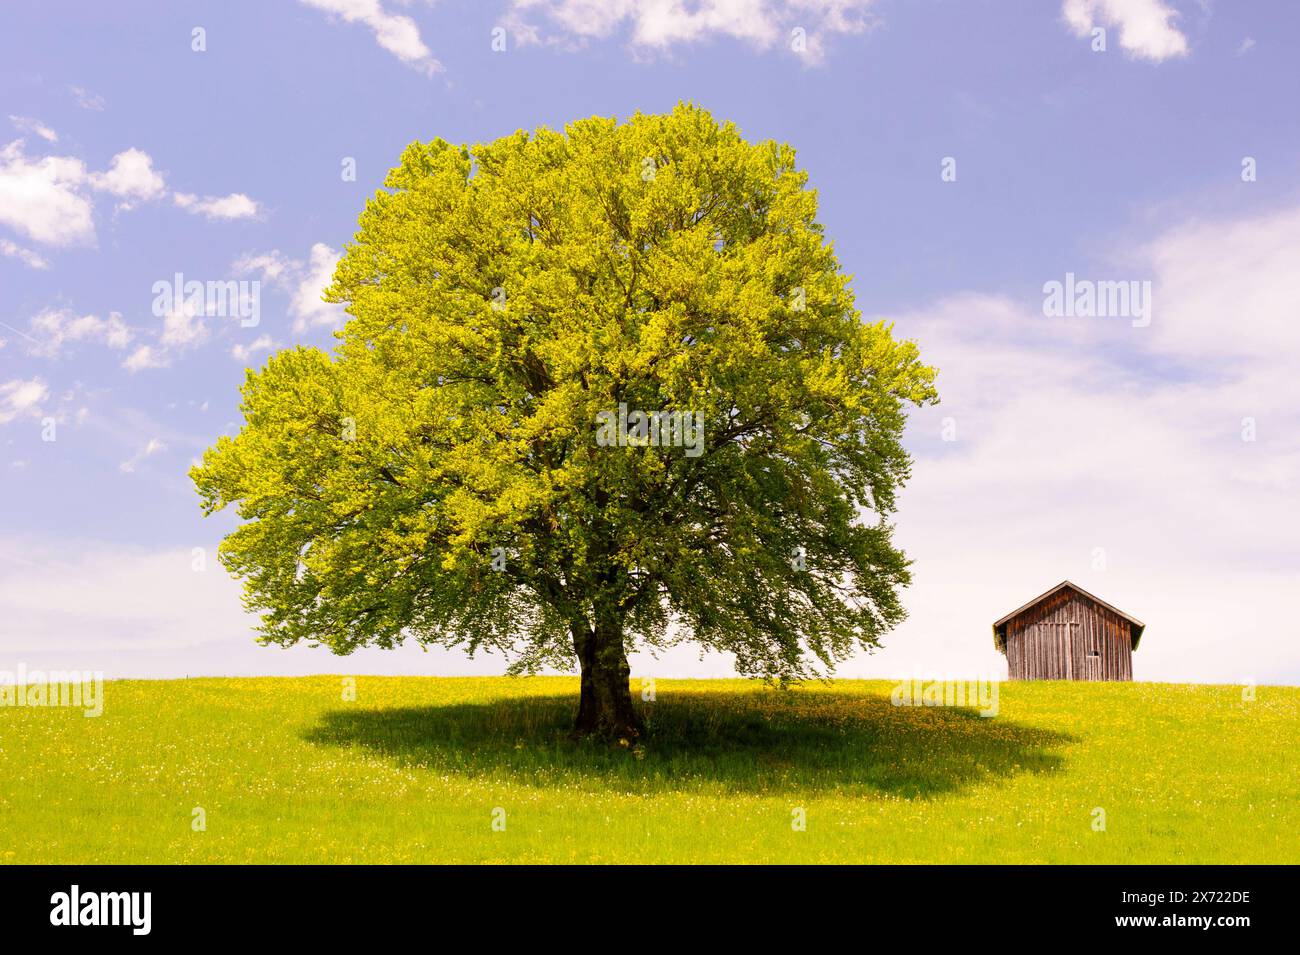 Eine buche im Frühling Eine buche steht als Einzelbaum auf einer Wiese im Frühling *** Un faggio in primavera Un faggio si trova da solo in un prato Foto Stock